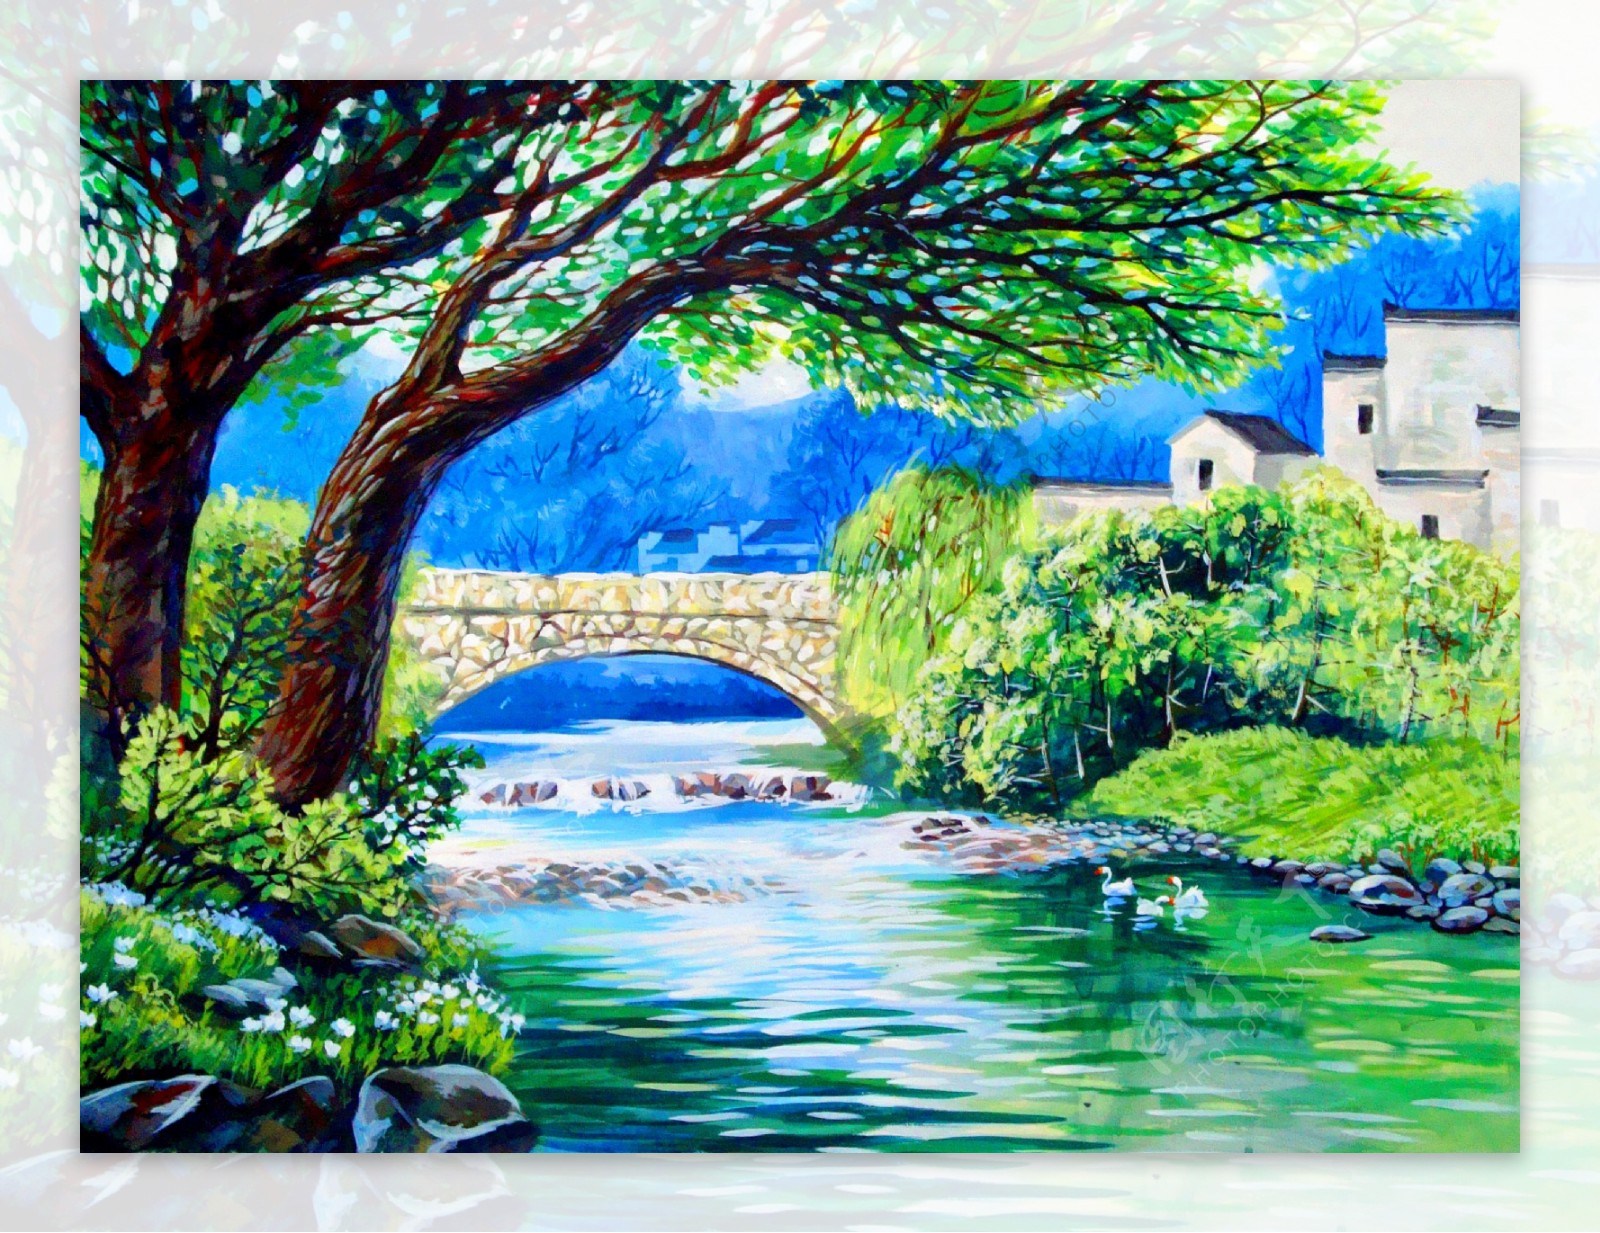 小桥流水风景油画图片